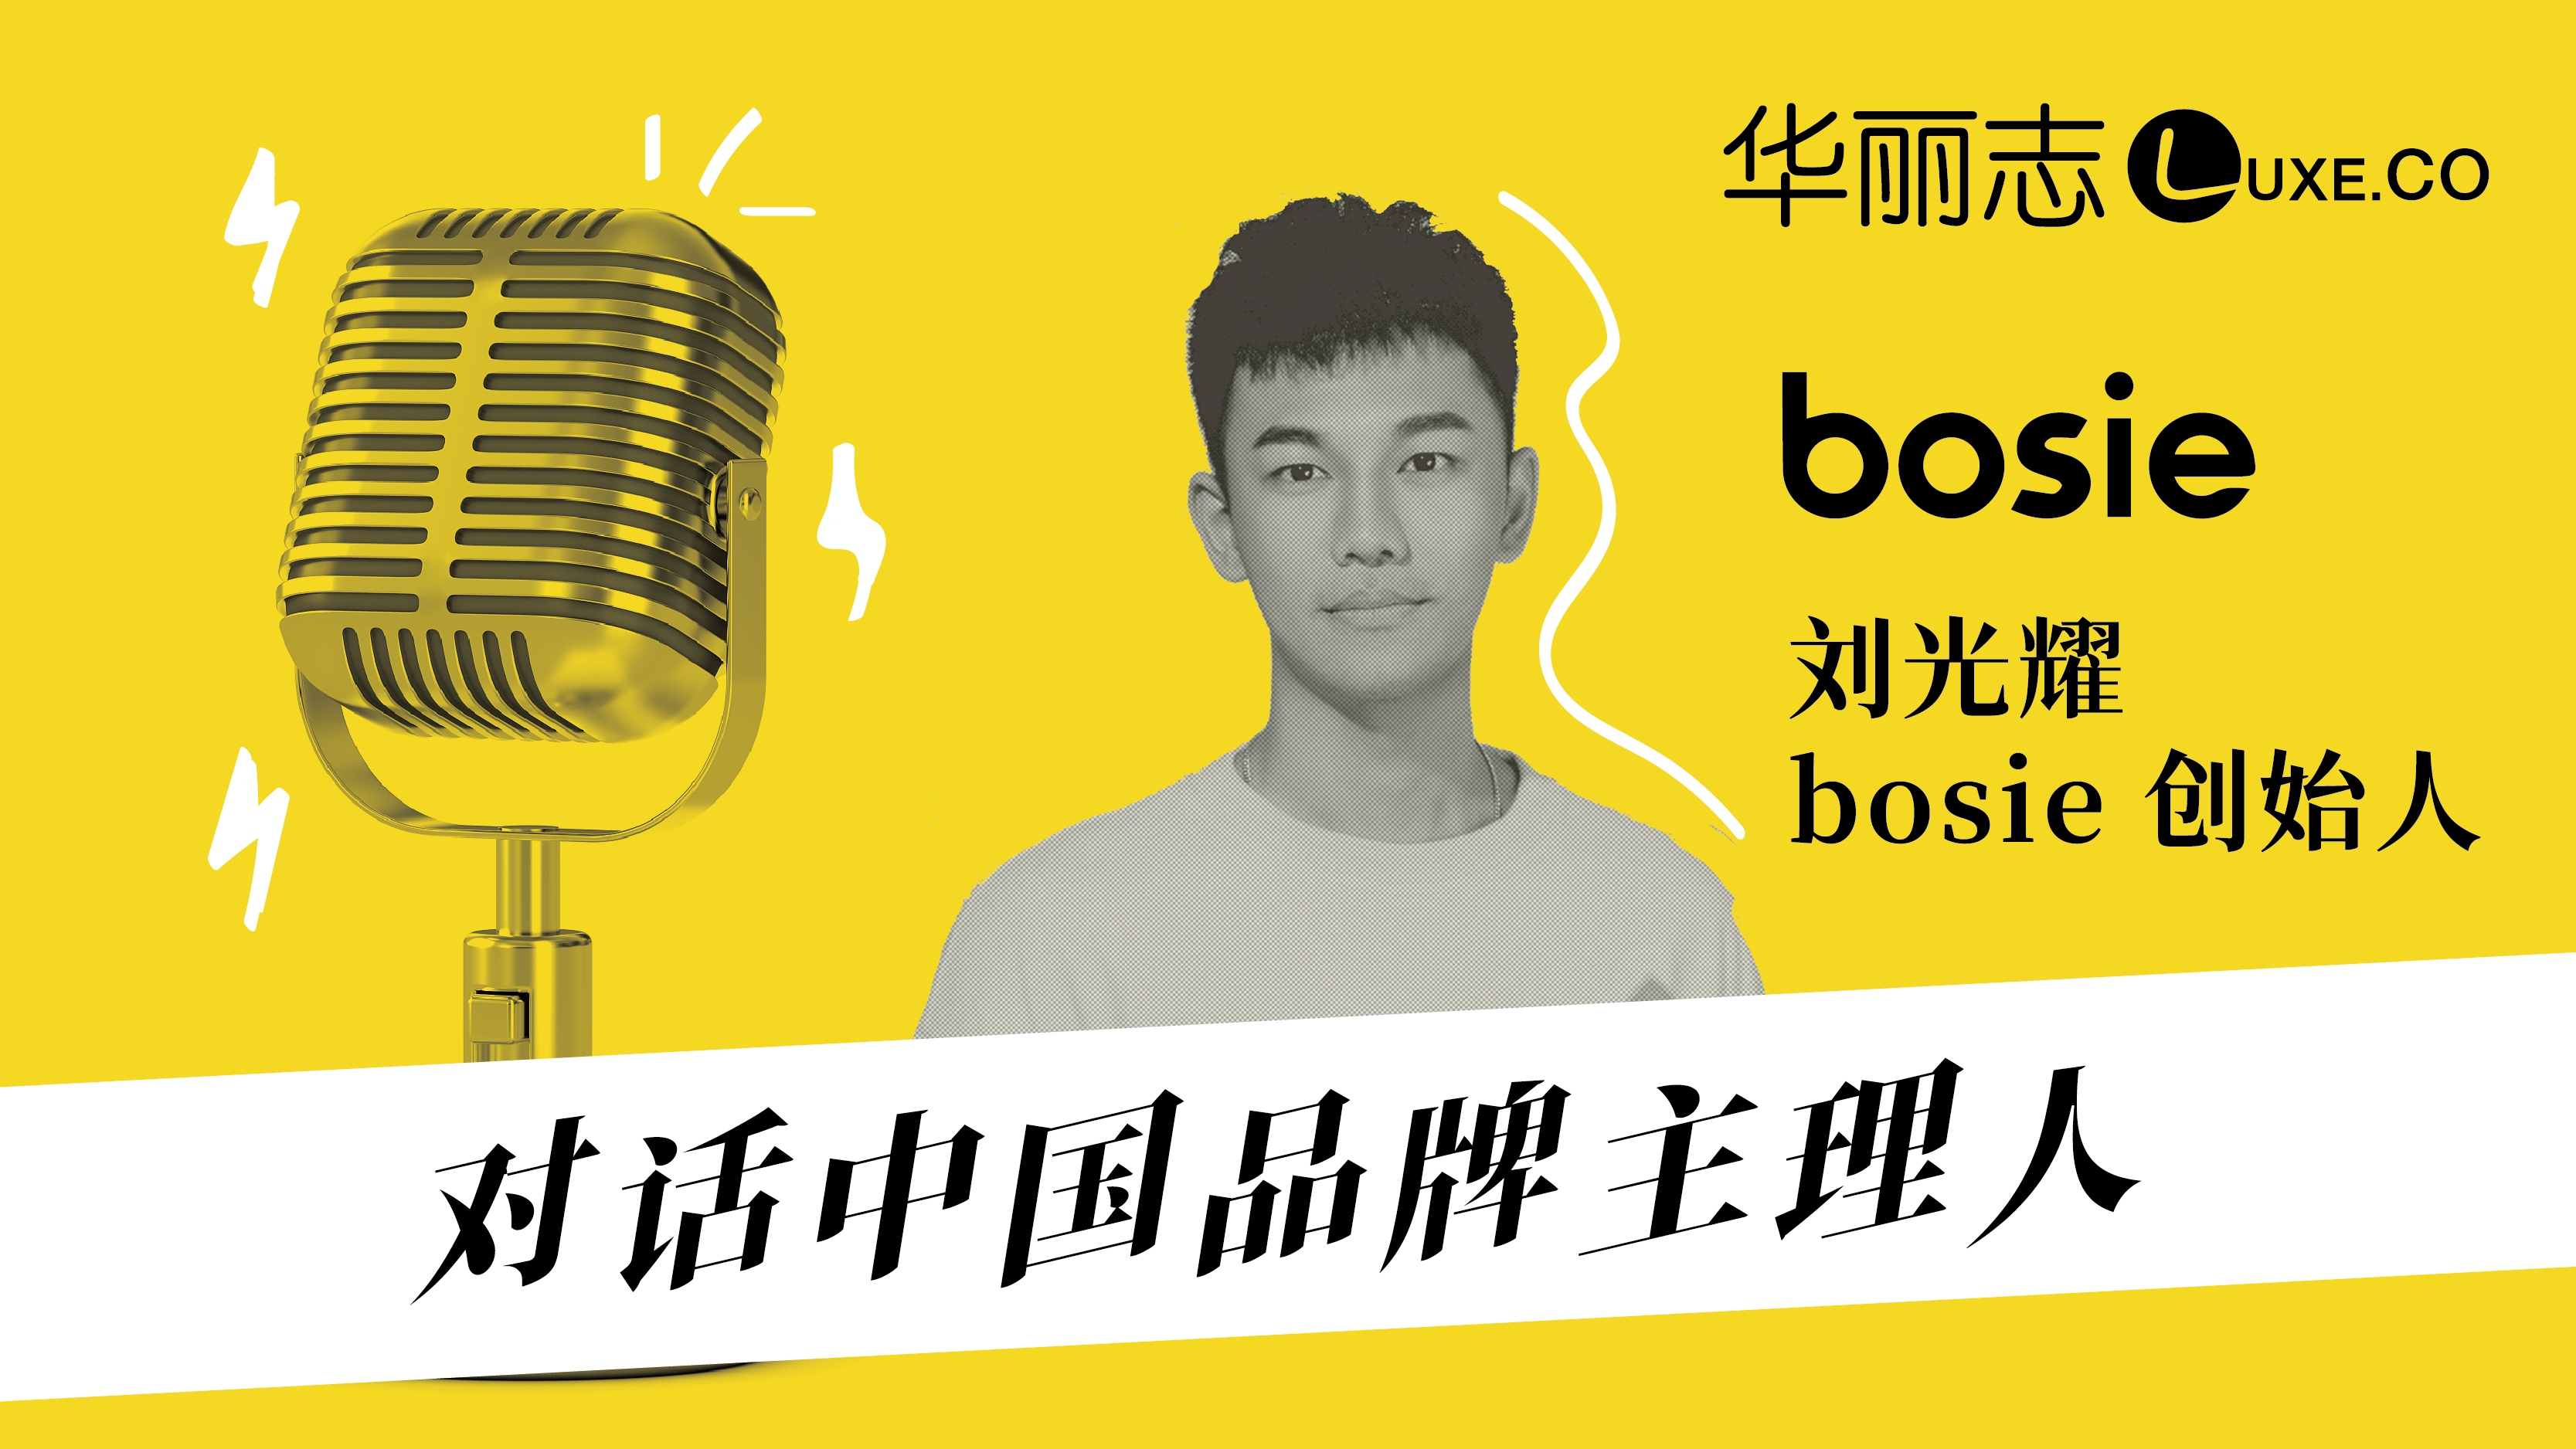 音频实录 | 对话中国品牌主理人－bosie创始人刘光耀：做品牌就像照镜子